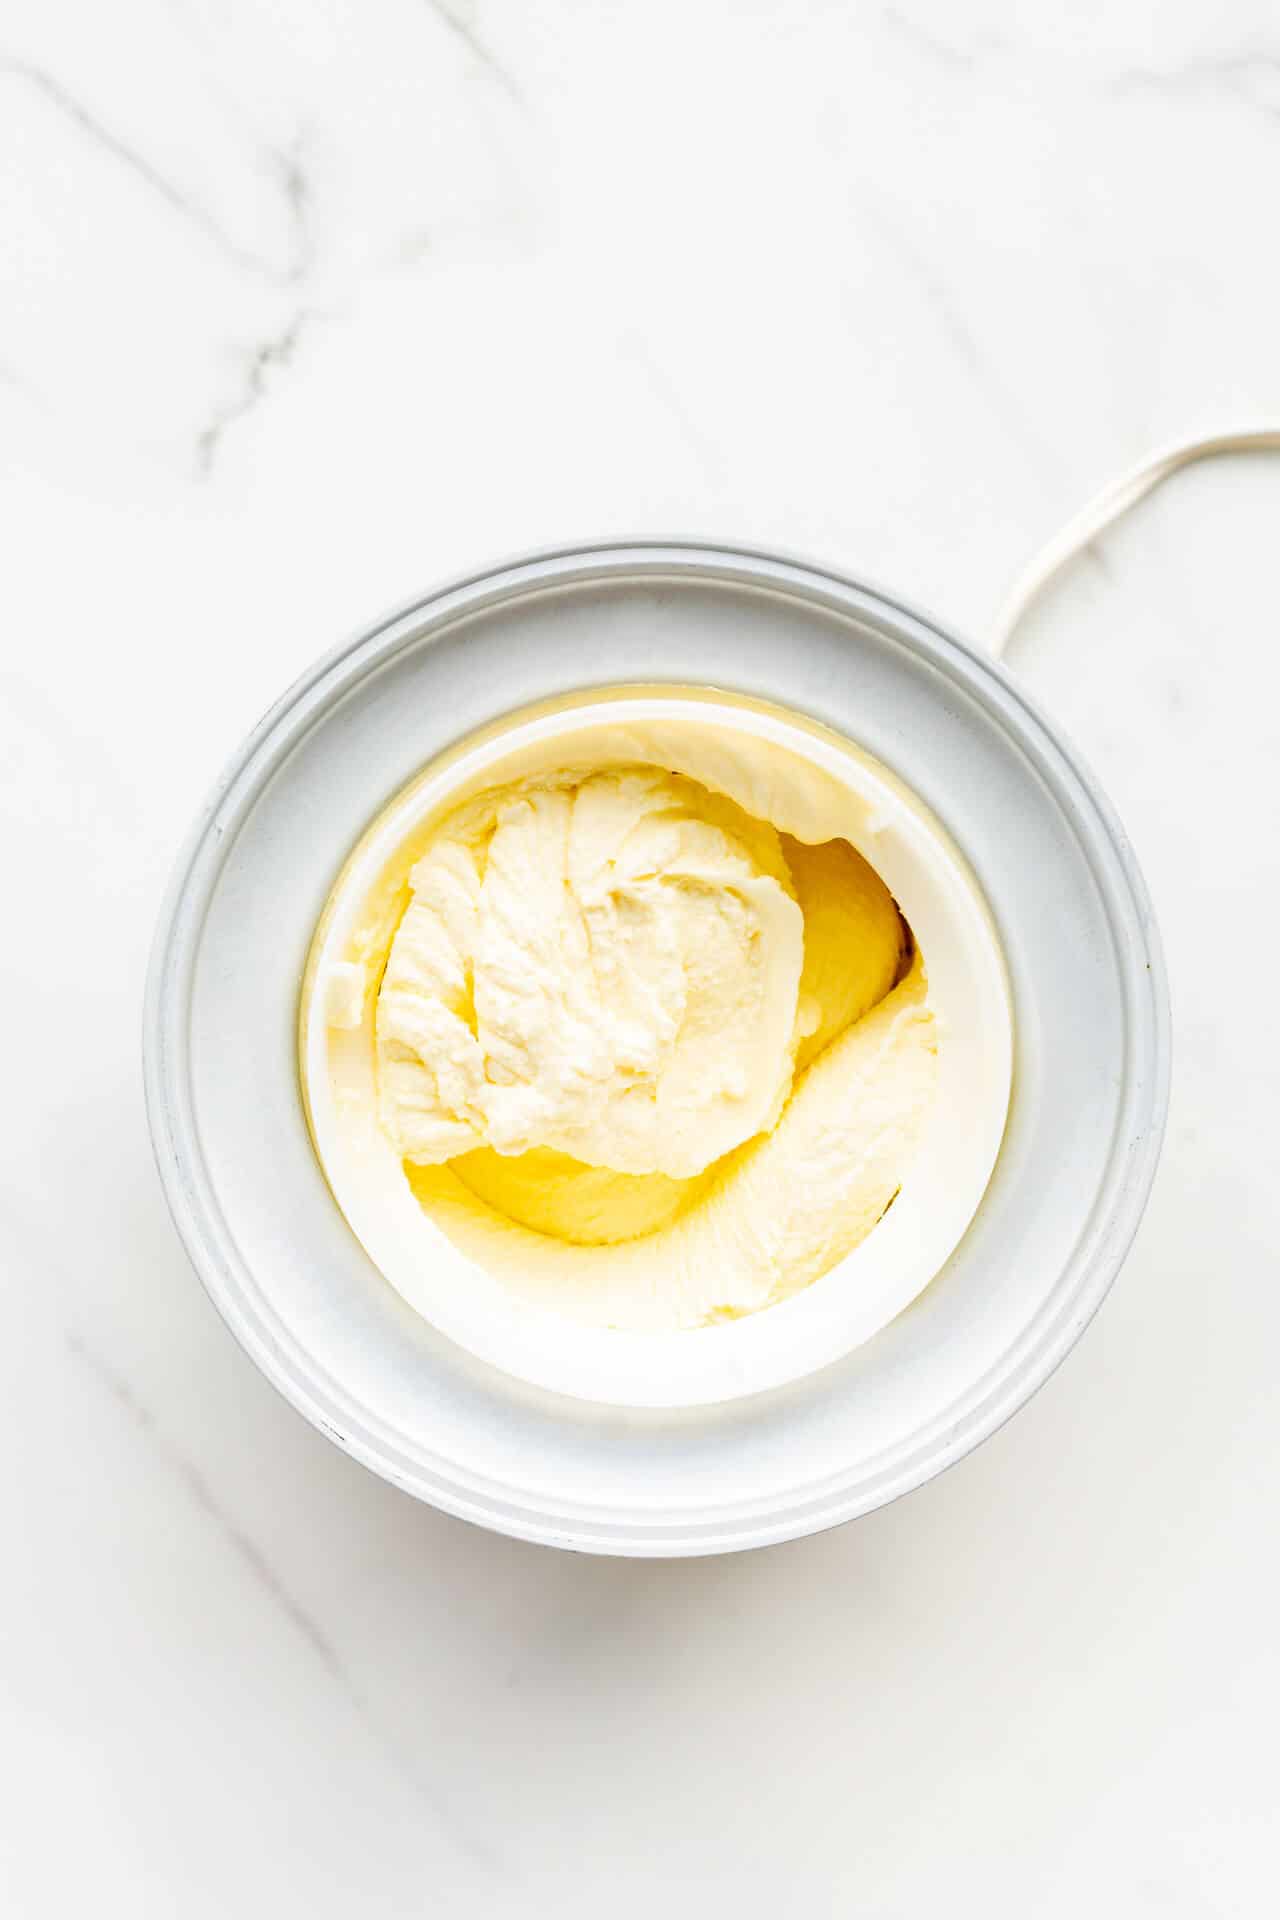 Freshly churned lemon ice cream in the Dewar